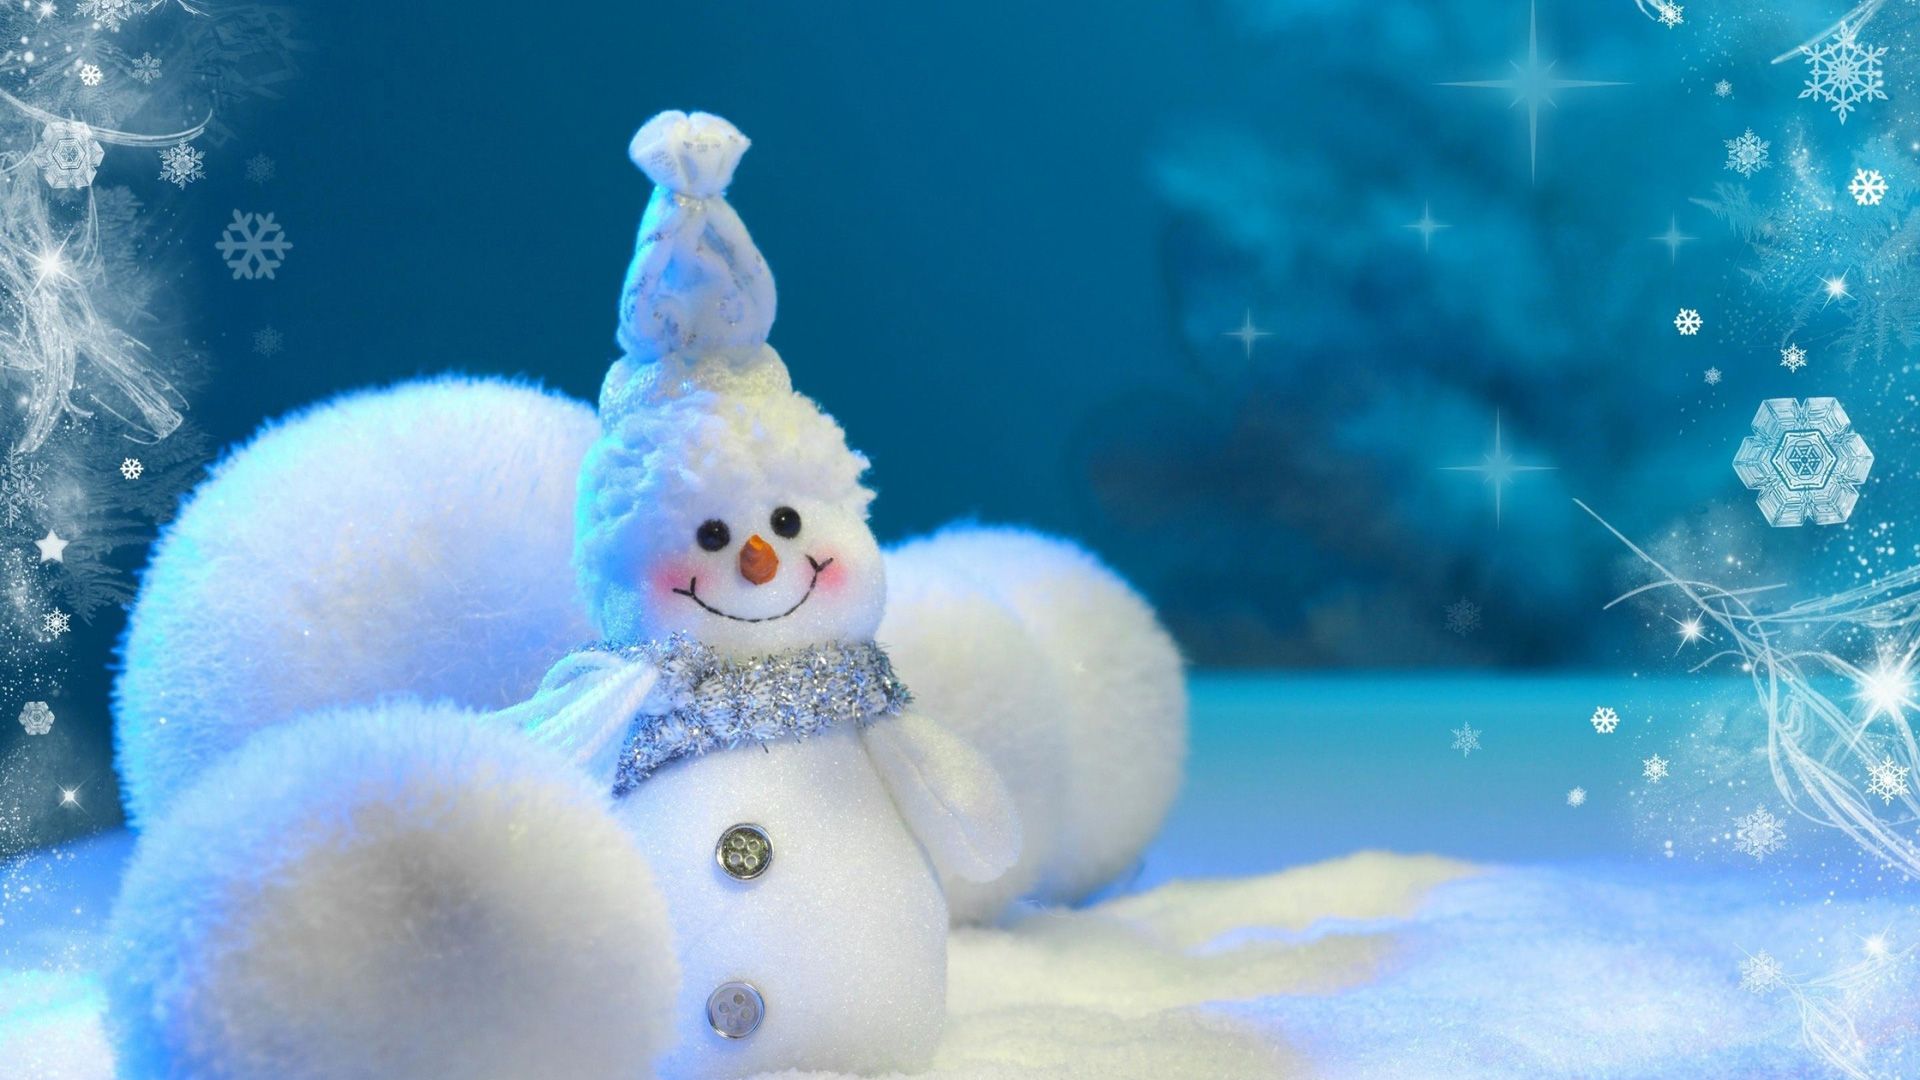 Download Wallpaper, Cute Snowman high definition wallpaper, 1080p